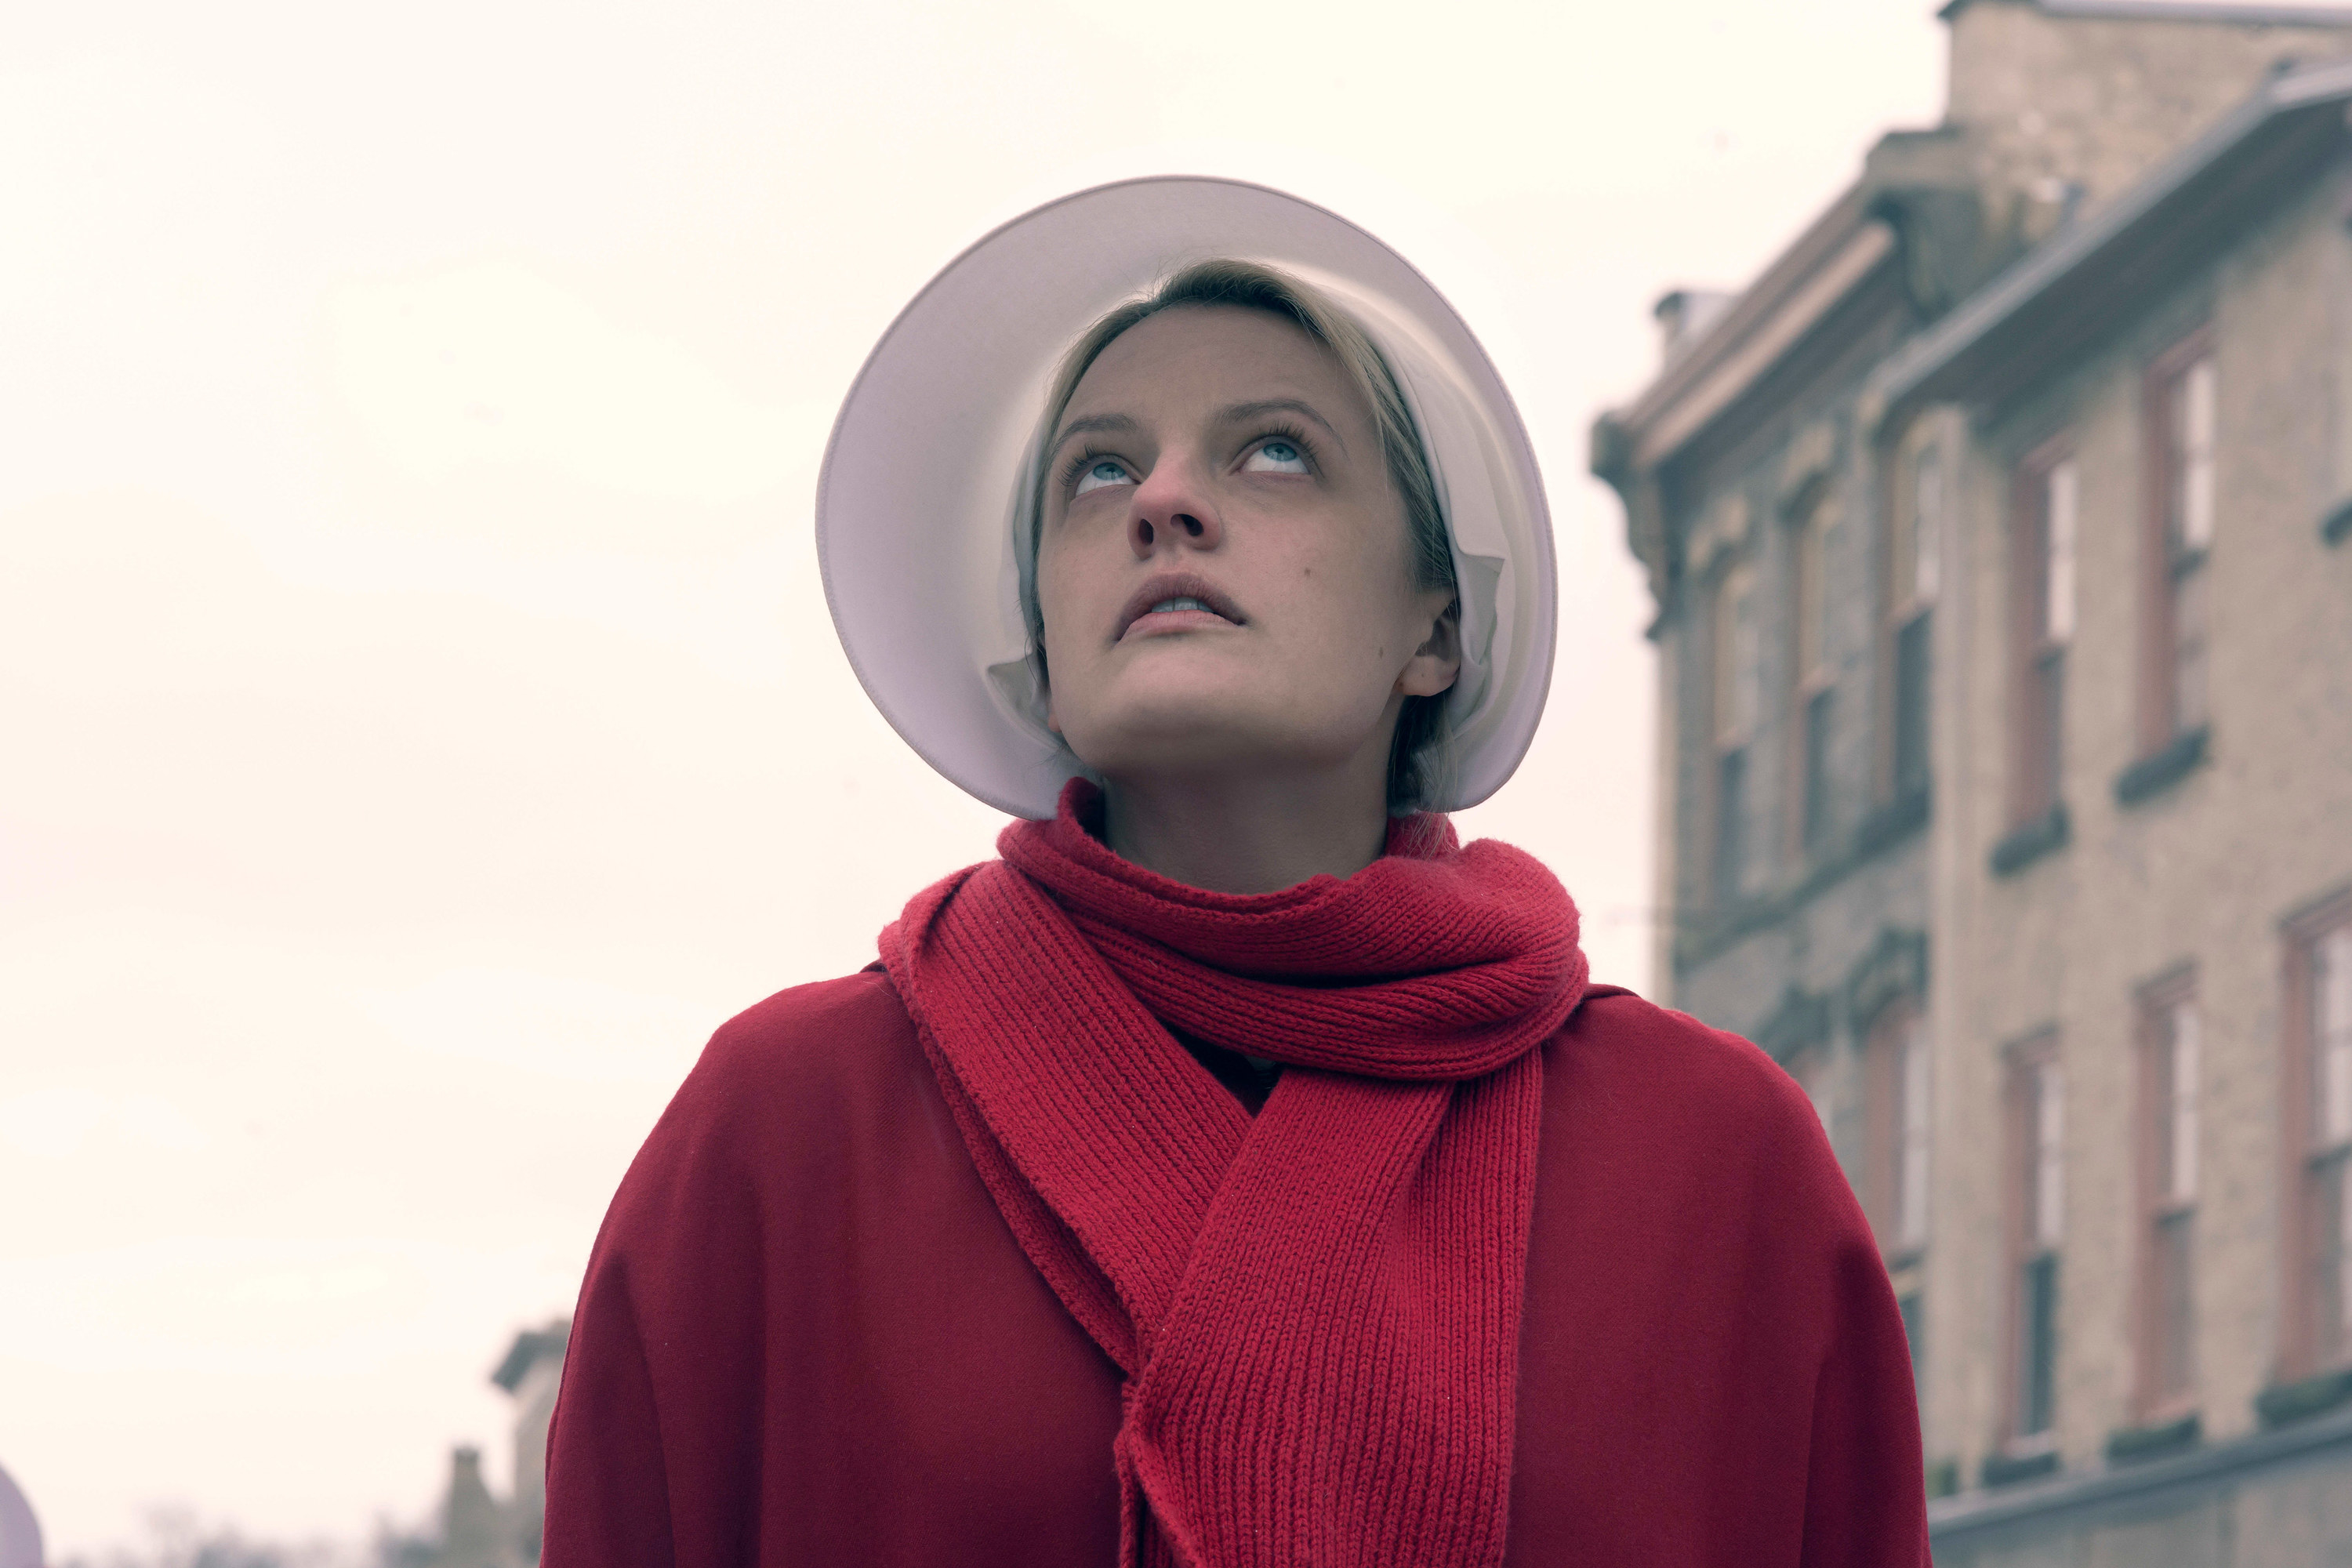 Elizabeth Moss outside in her red dress and bonnet looking upward